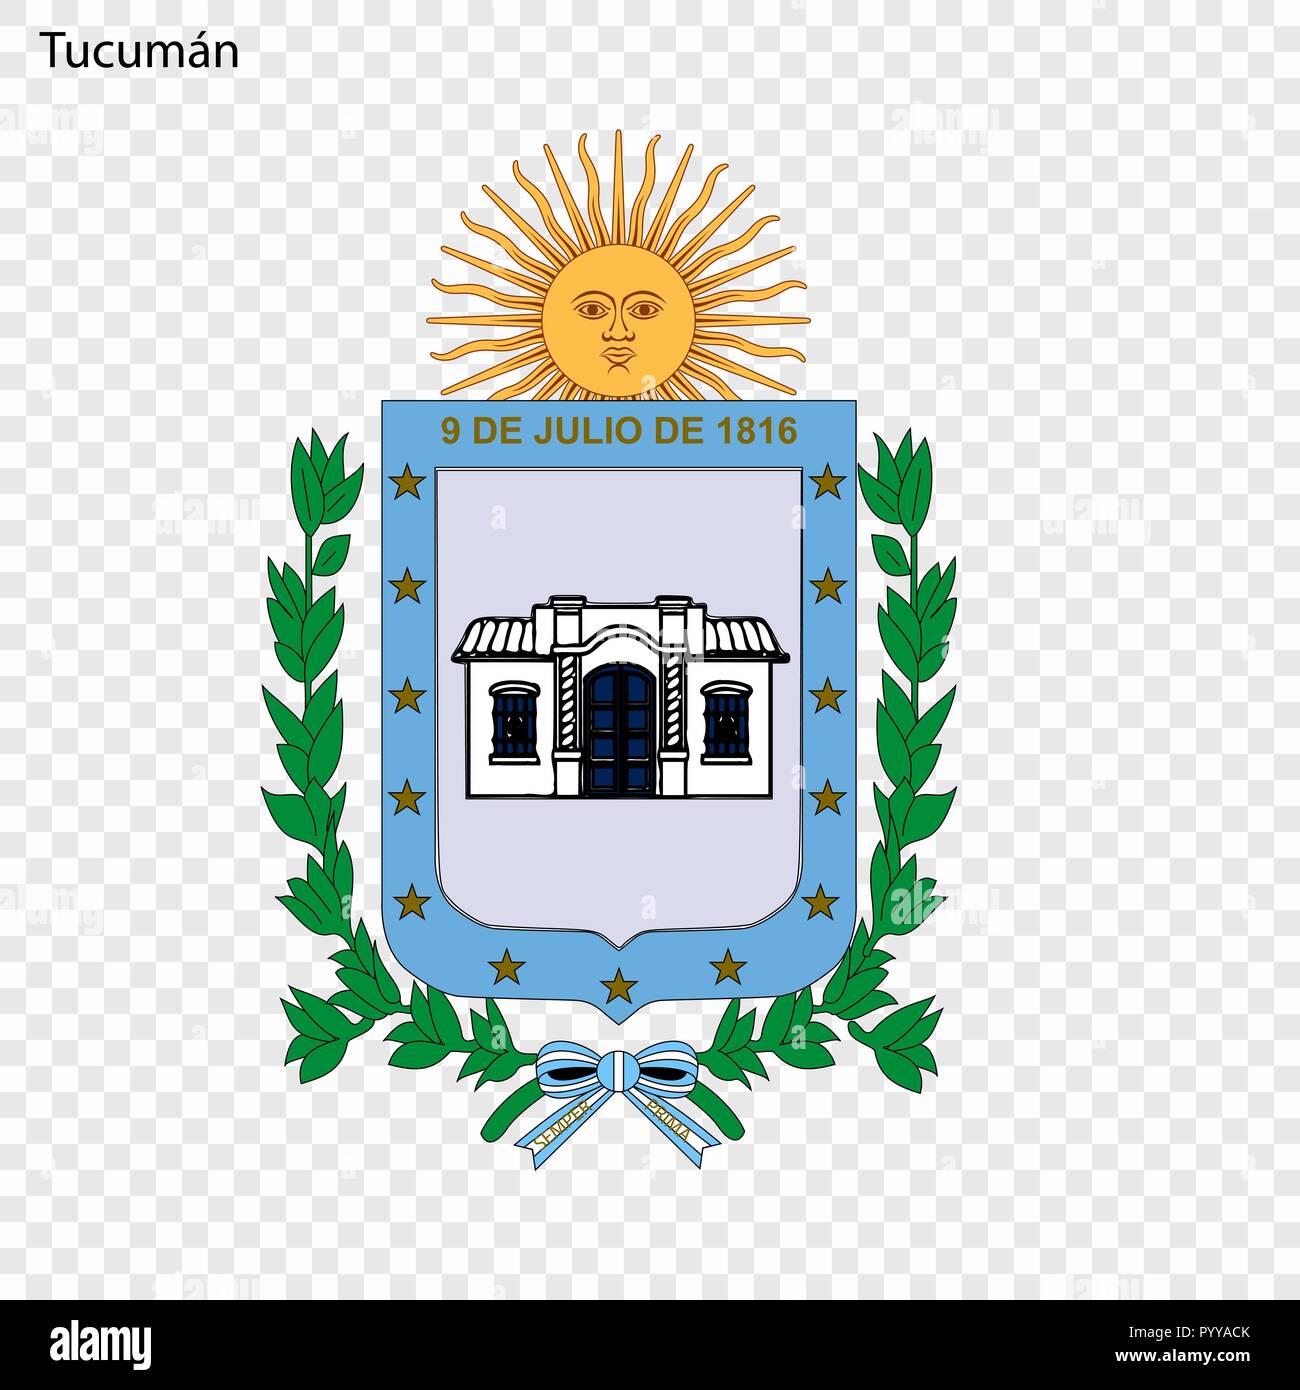 Emblem of San Miguel de Tucuman. City of Argentina. Vector illustration Stock Vector